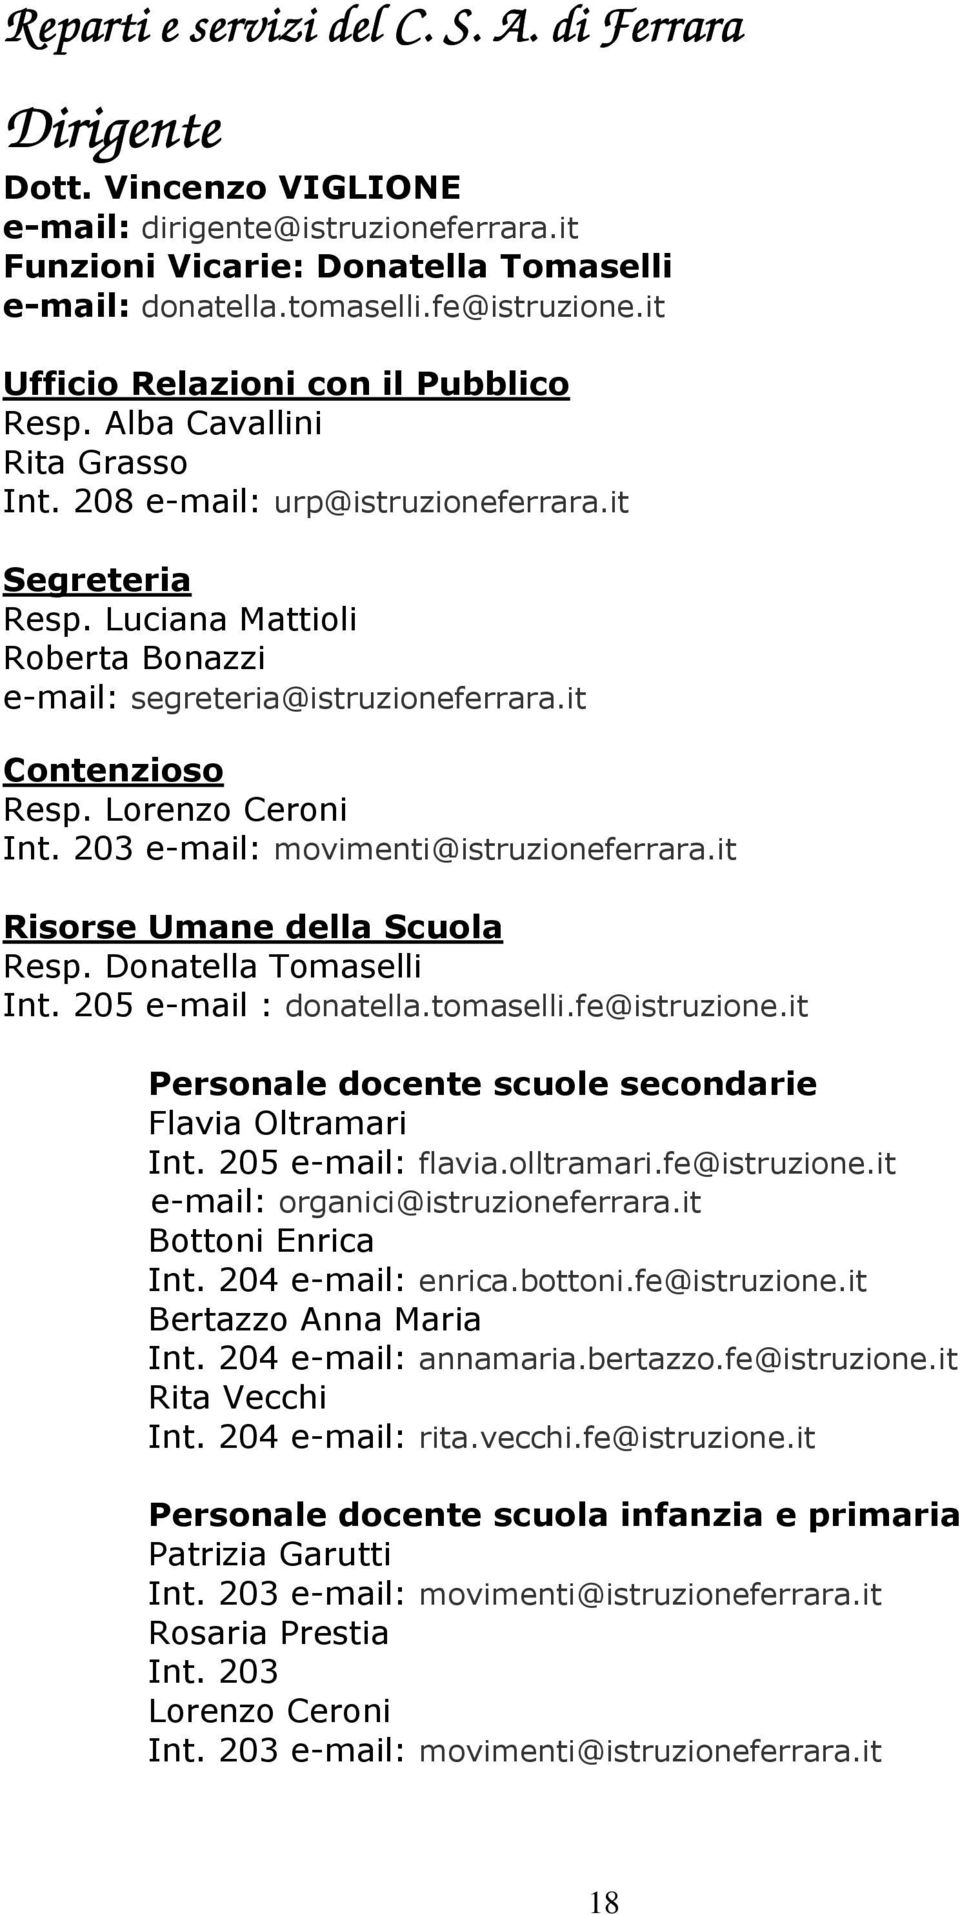 it Contenzioso Resp. Lorenzo Ceroni Int. 203 e-mail: movimenti@istruzioneferrara.it Risorse Umane della Scuola Resp. Donatella Tomaselli Int. 205 e-mail : donatella.tomaselli.fe@istruzione.